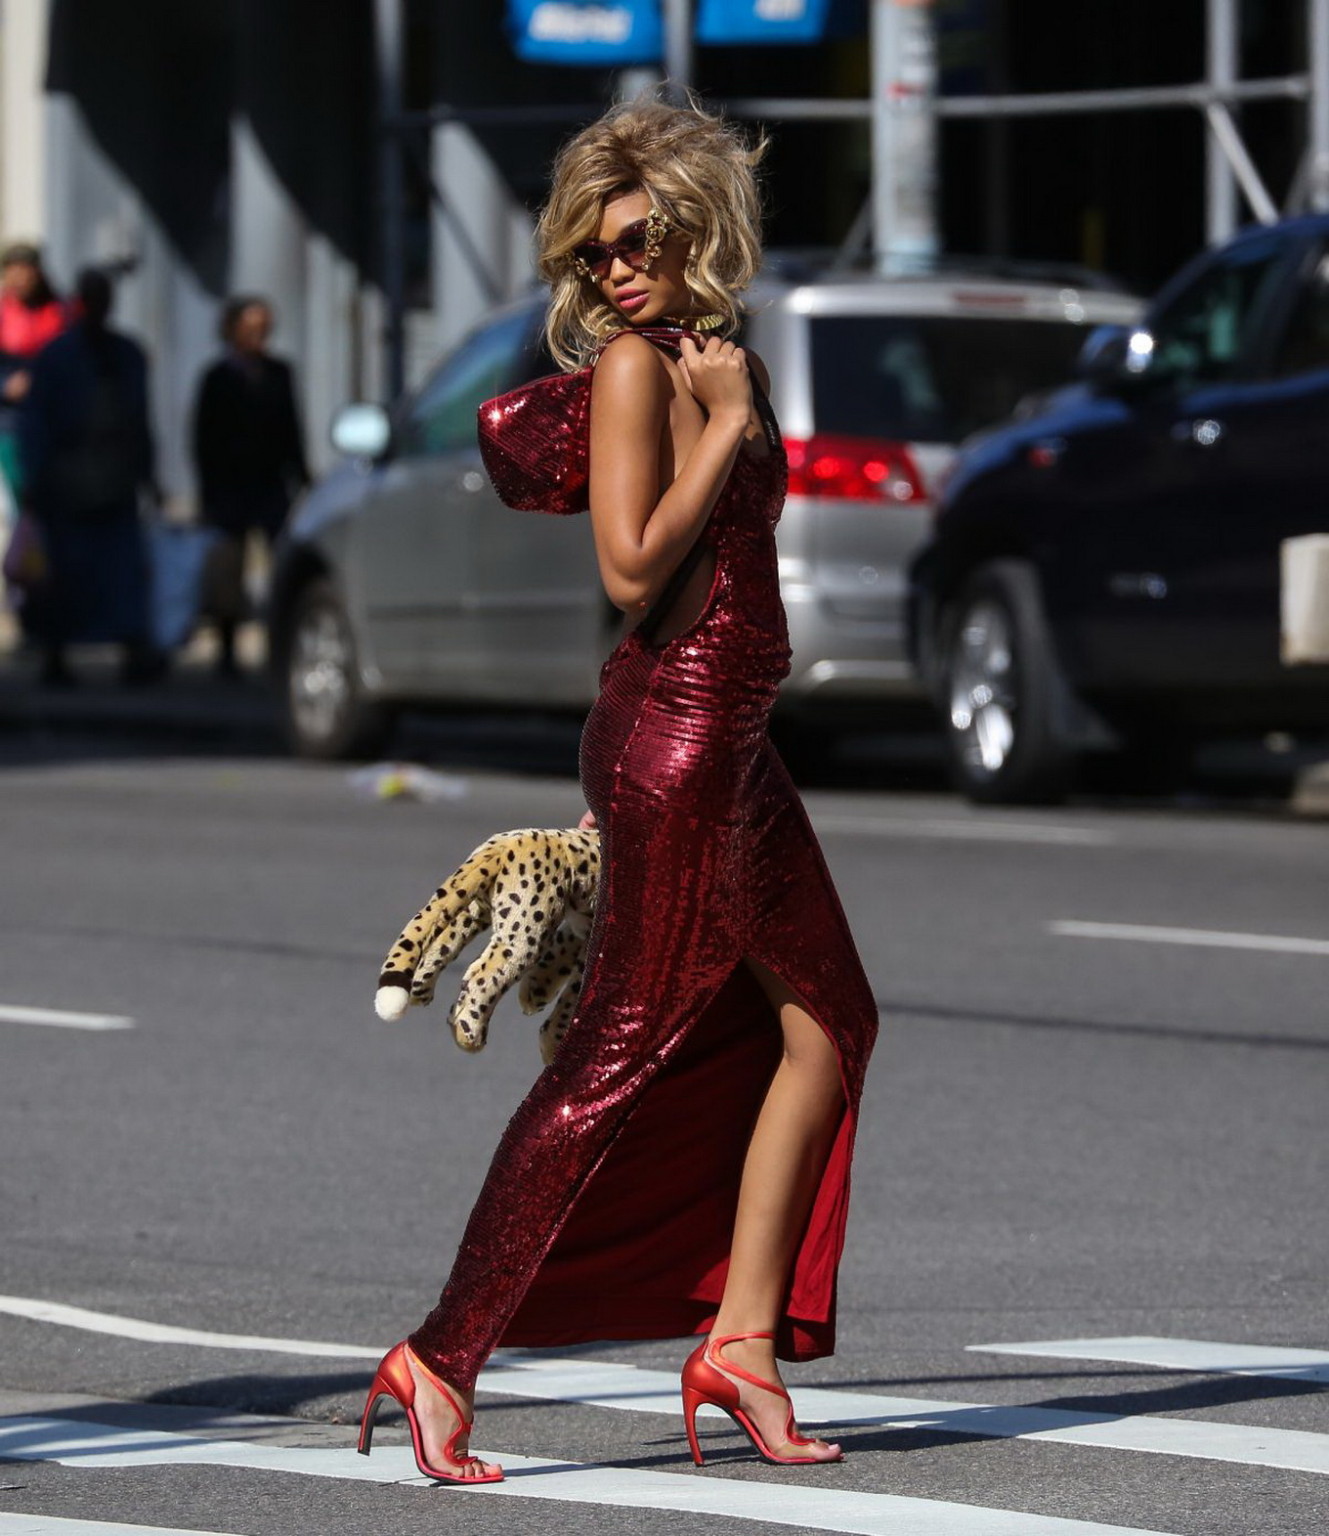 Chanel iman montre ses seins et ses jambes lors d'une séance de photos dans la rue à New York.
 #75194997